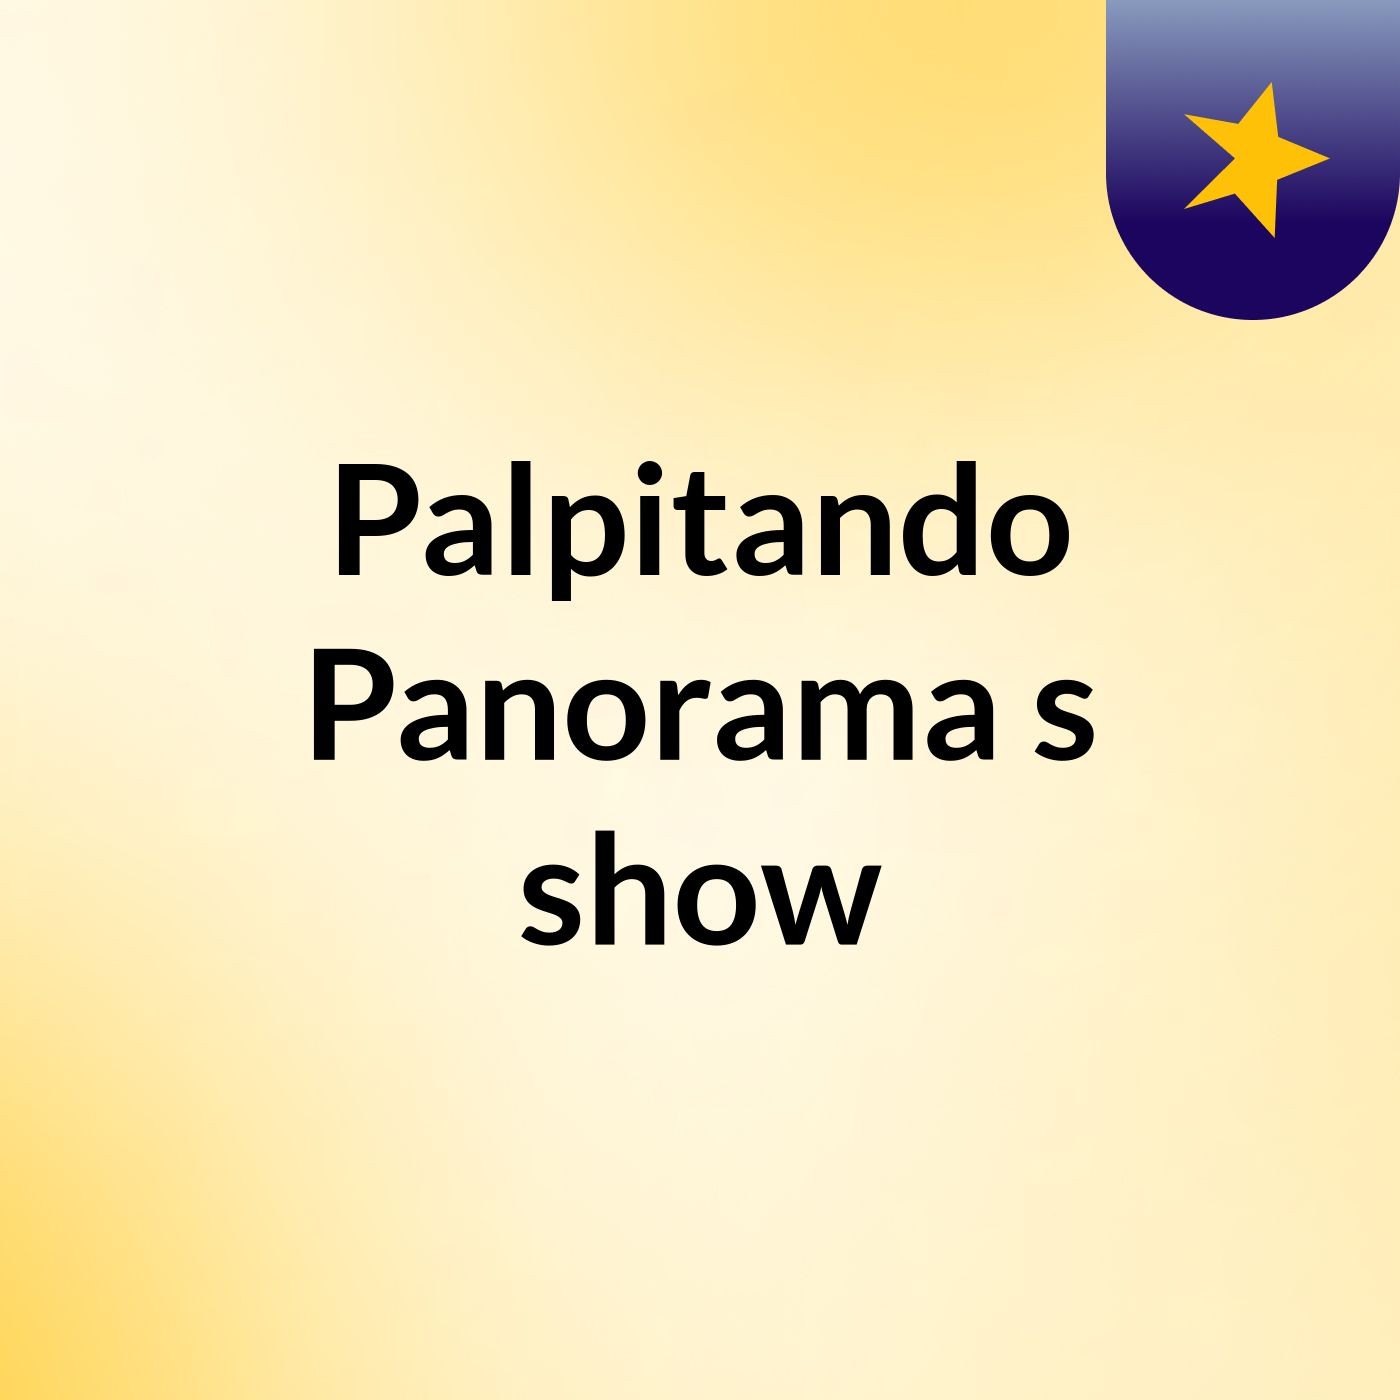 Palpitando Panorama's show